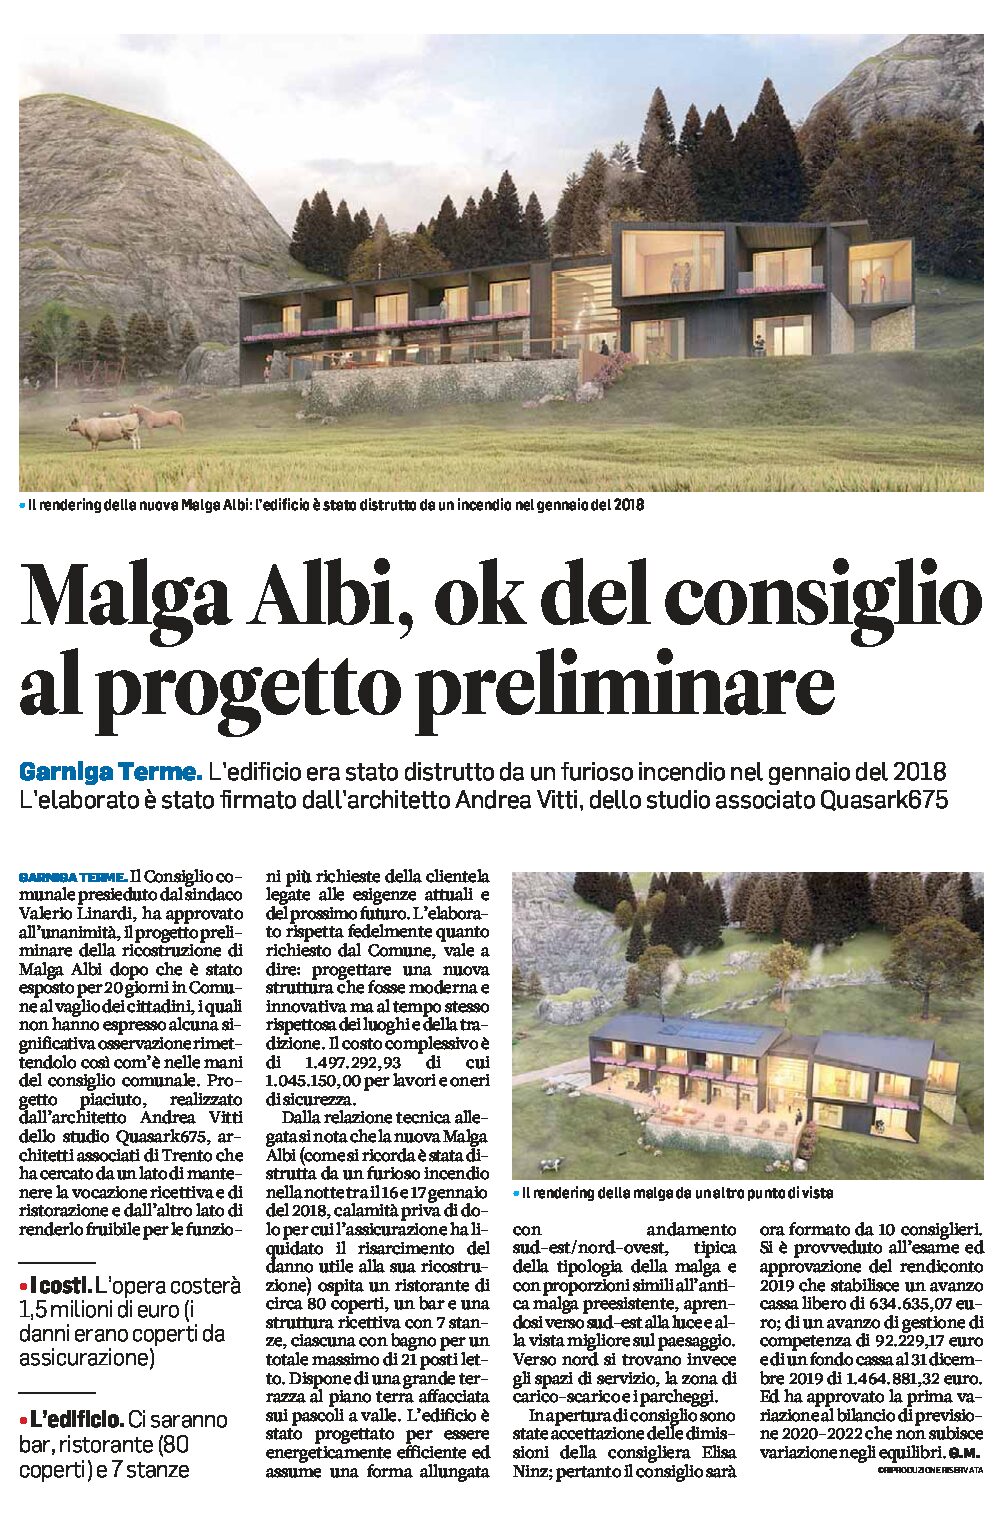 Garniga Terme: ok del consiglio al progetto preliminare per la ricostruzione di Malga Albi